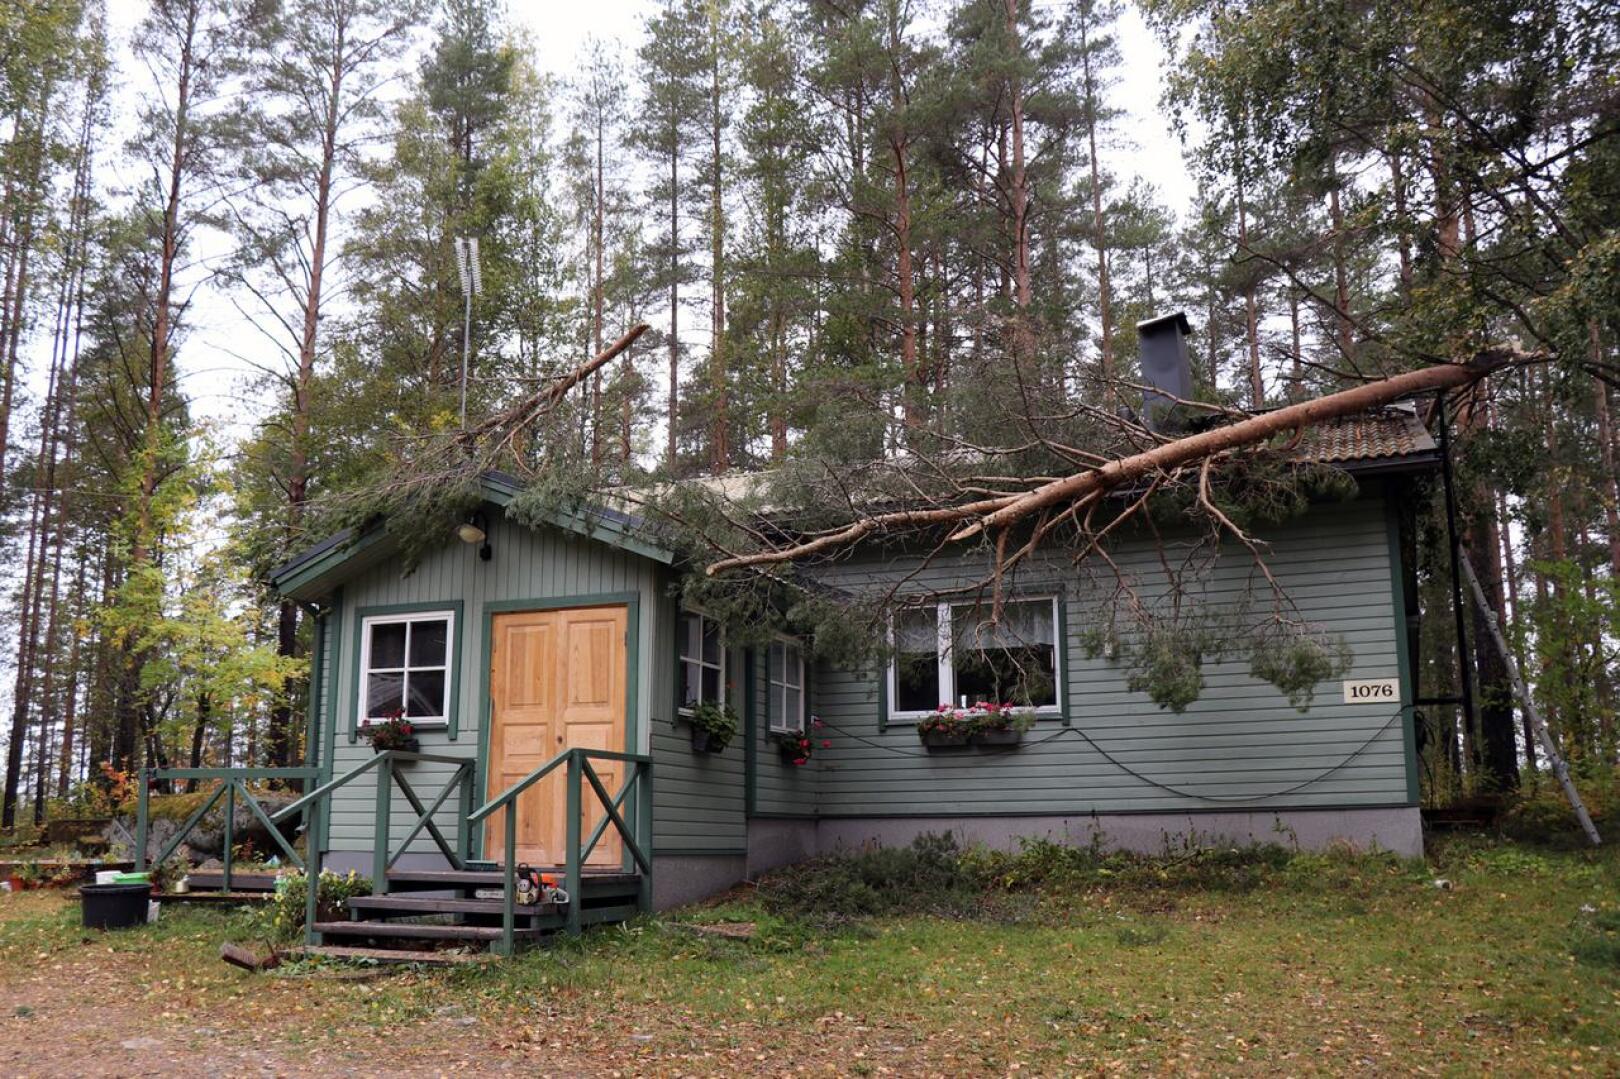 Aila-myrsky katkaisi kaksihaaraisen männyn toisen latvan suoraan Anneli ja Kimmo Kentalan talon katon päälle Halsuan Kanasessa.